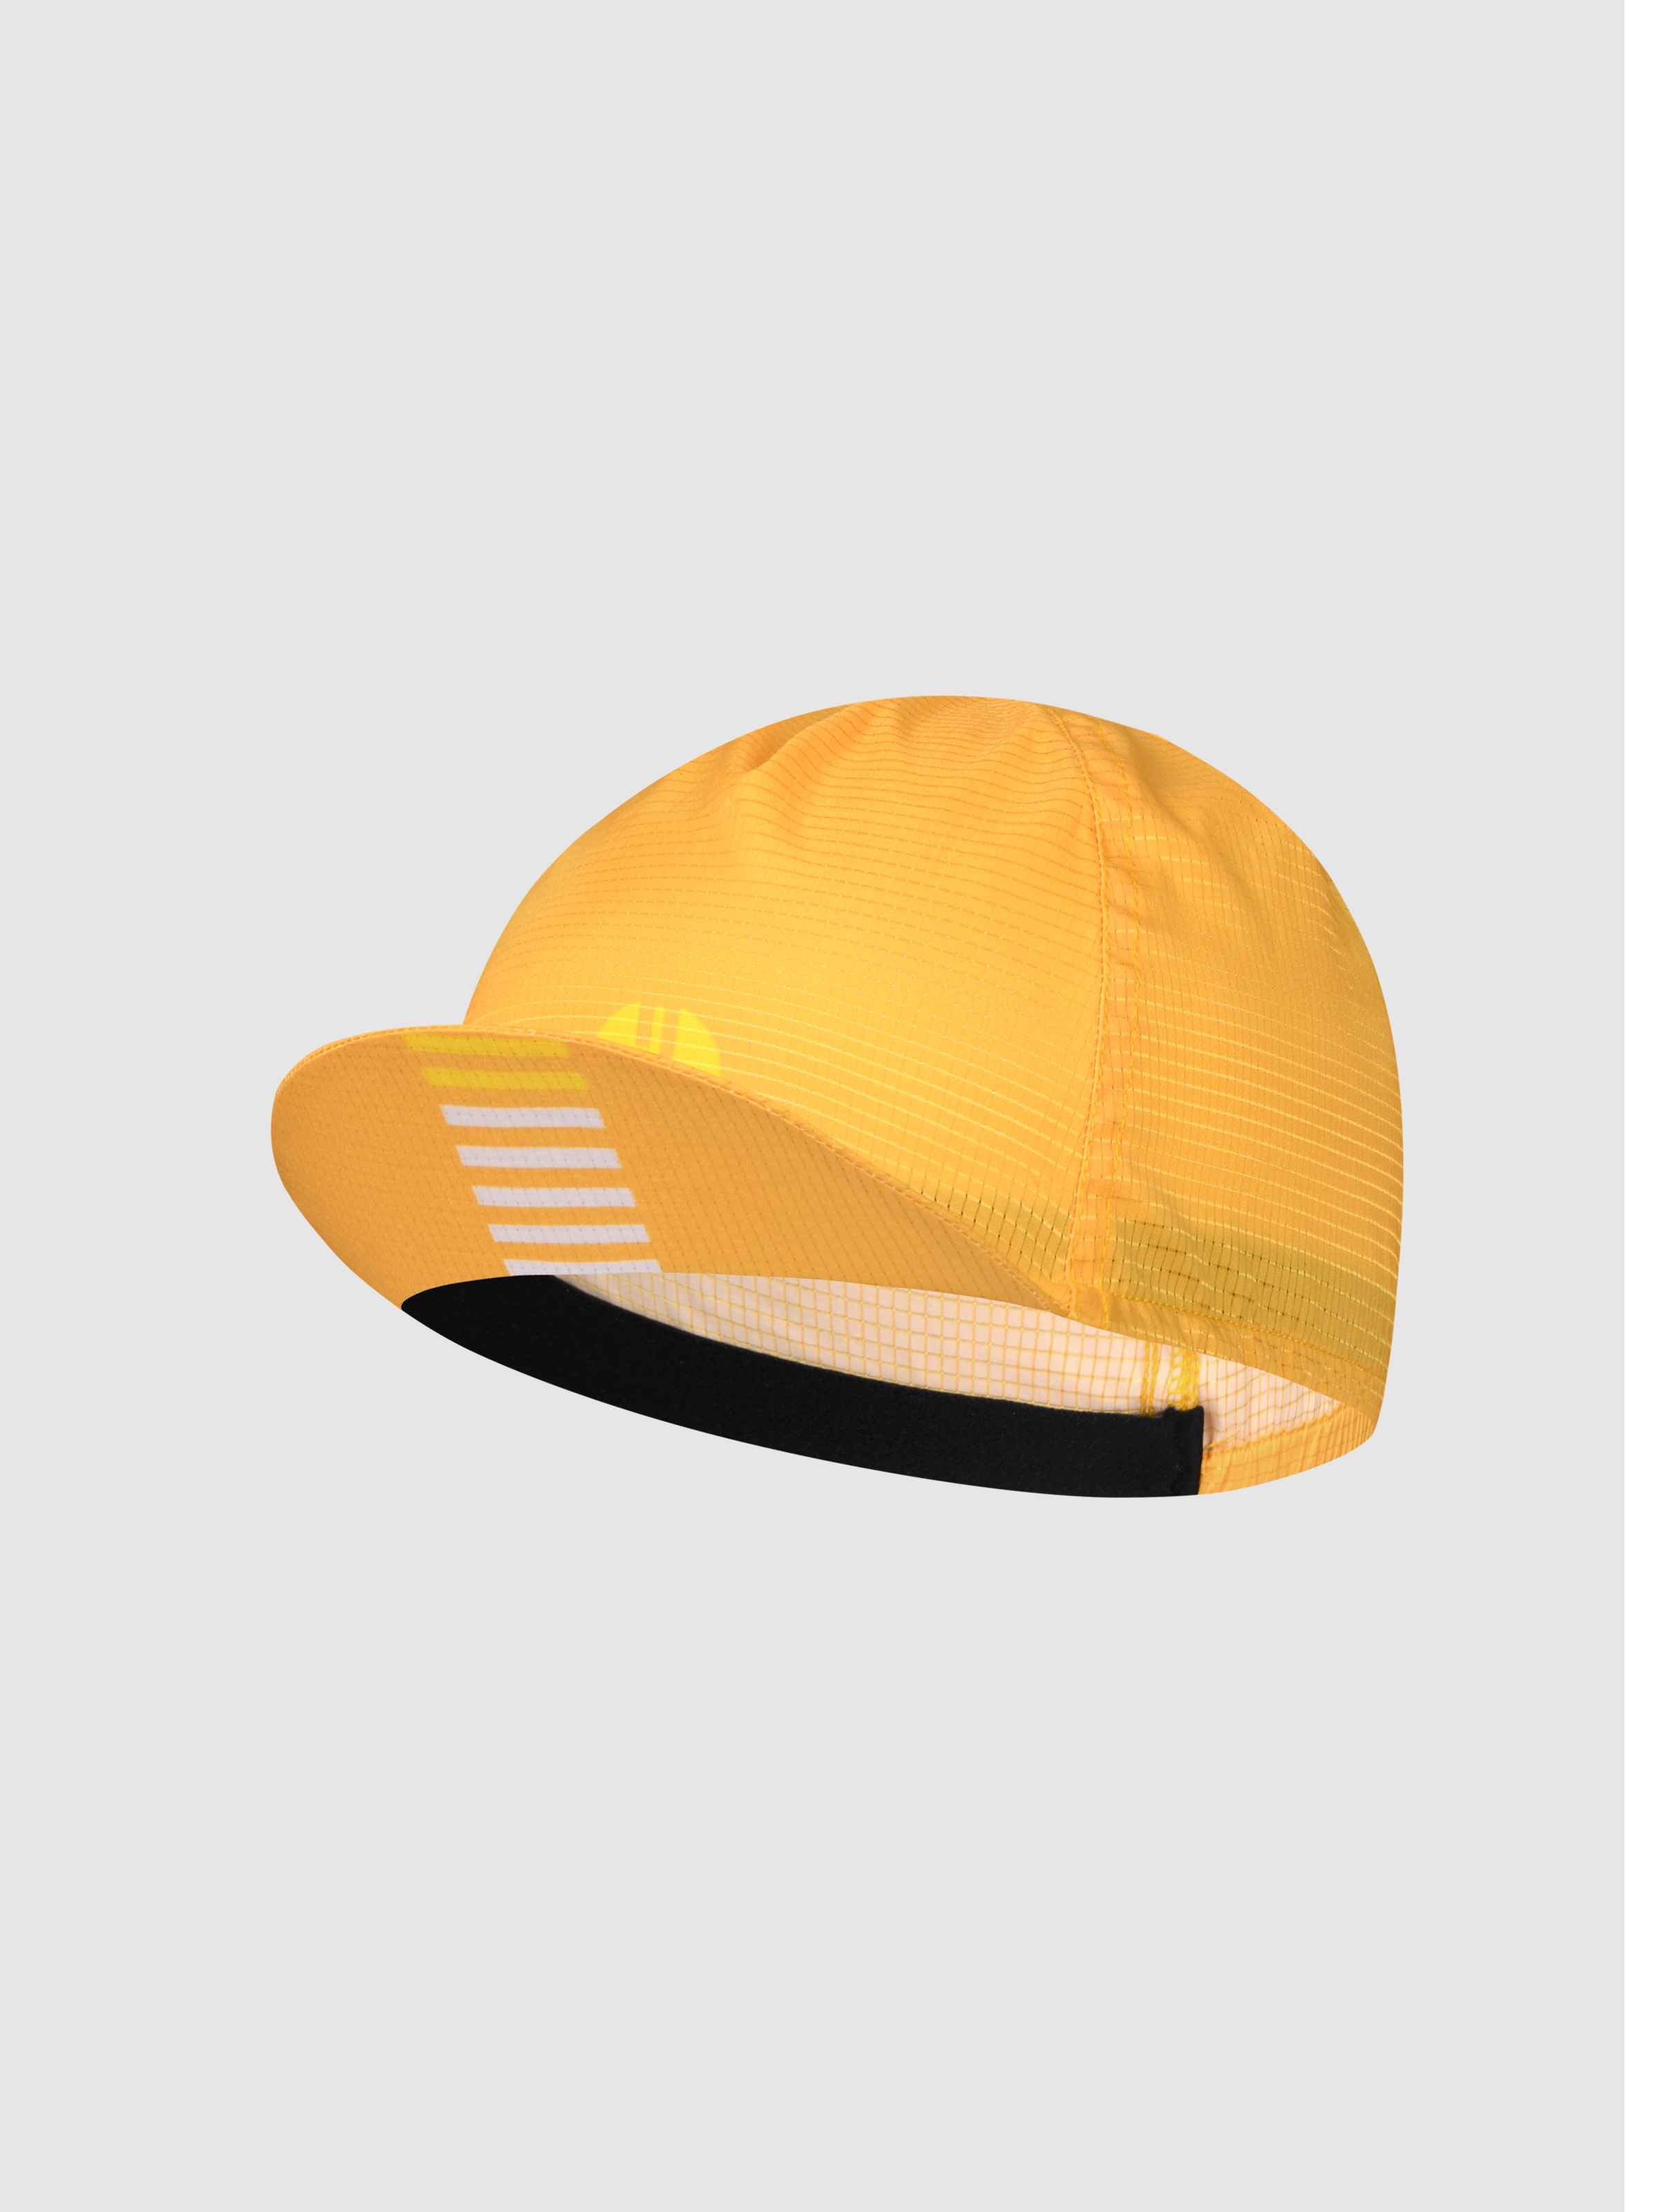 cycling cap under helmet